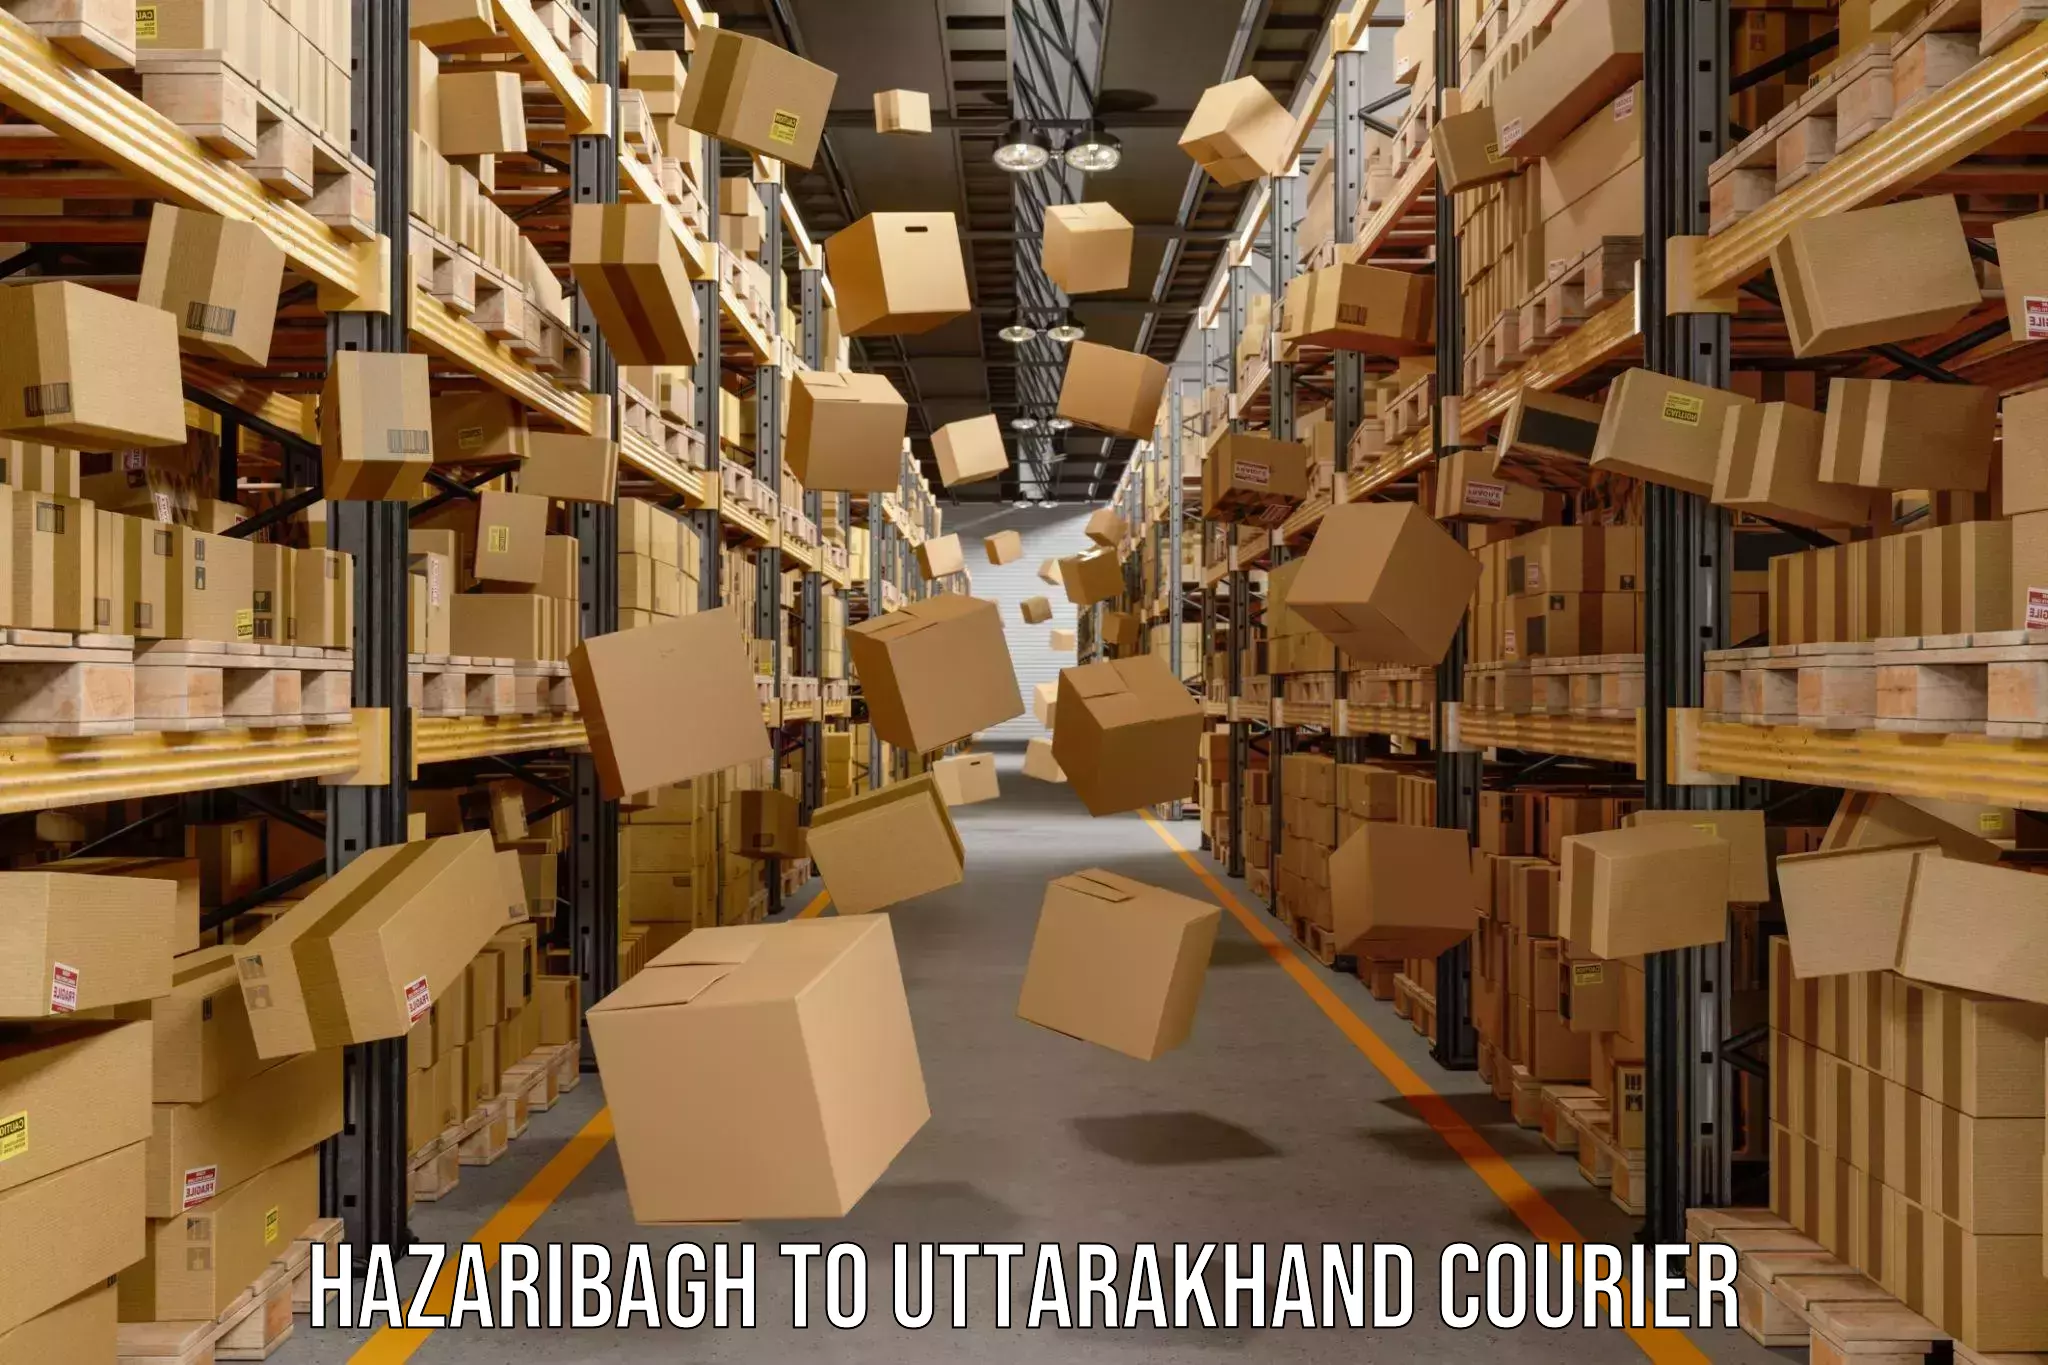 Online courier booking Hazaribagh to Dehradun